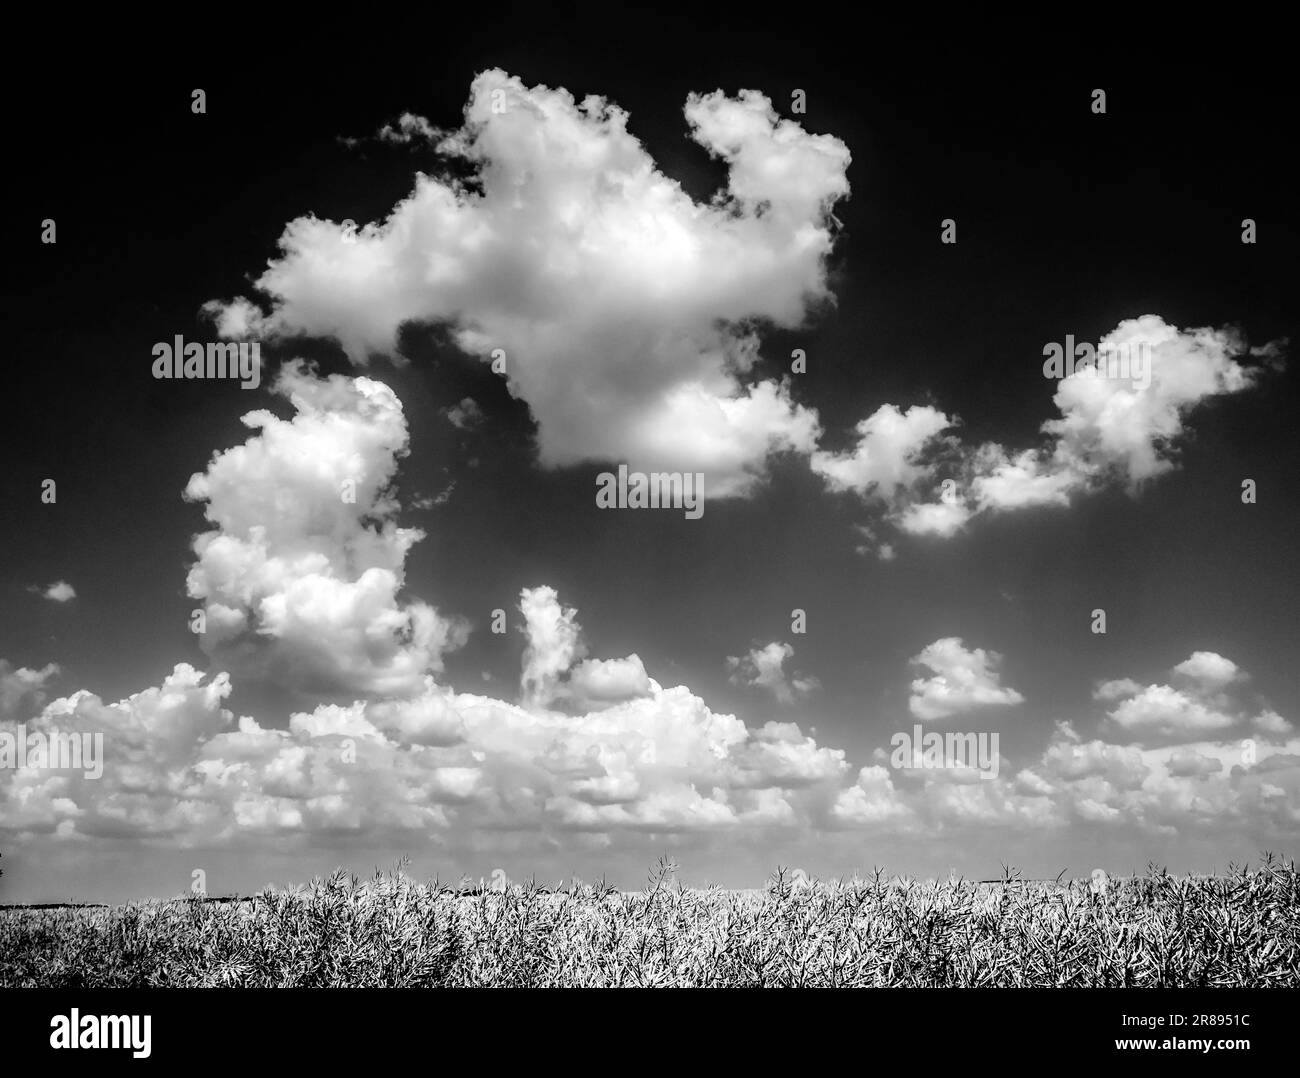 Diese flauschigen Wolken treiben über das Schlachtfeld der Somme im 1. Weltkrieg in Frankreich. Wie viele Soldaten hätten so eine friedliche Szene gesehen, während das Blutbad weiterging? Stockfoto